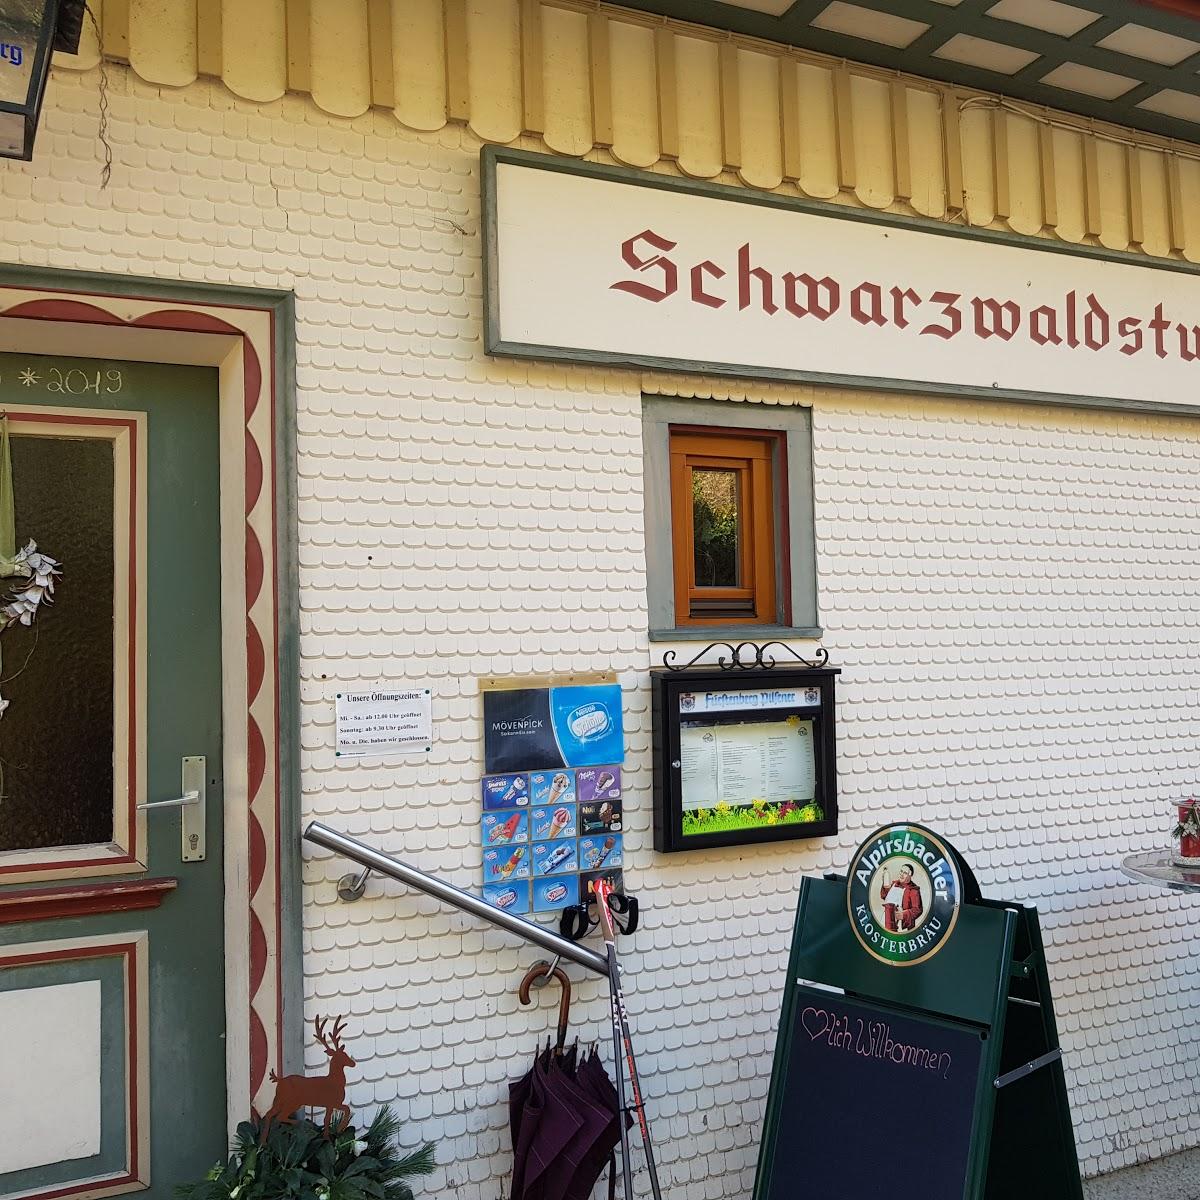 Restaurant "Schwarzwaldstube - Eselbach" in  Aichhalden